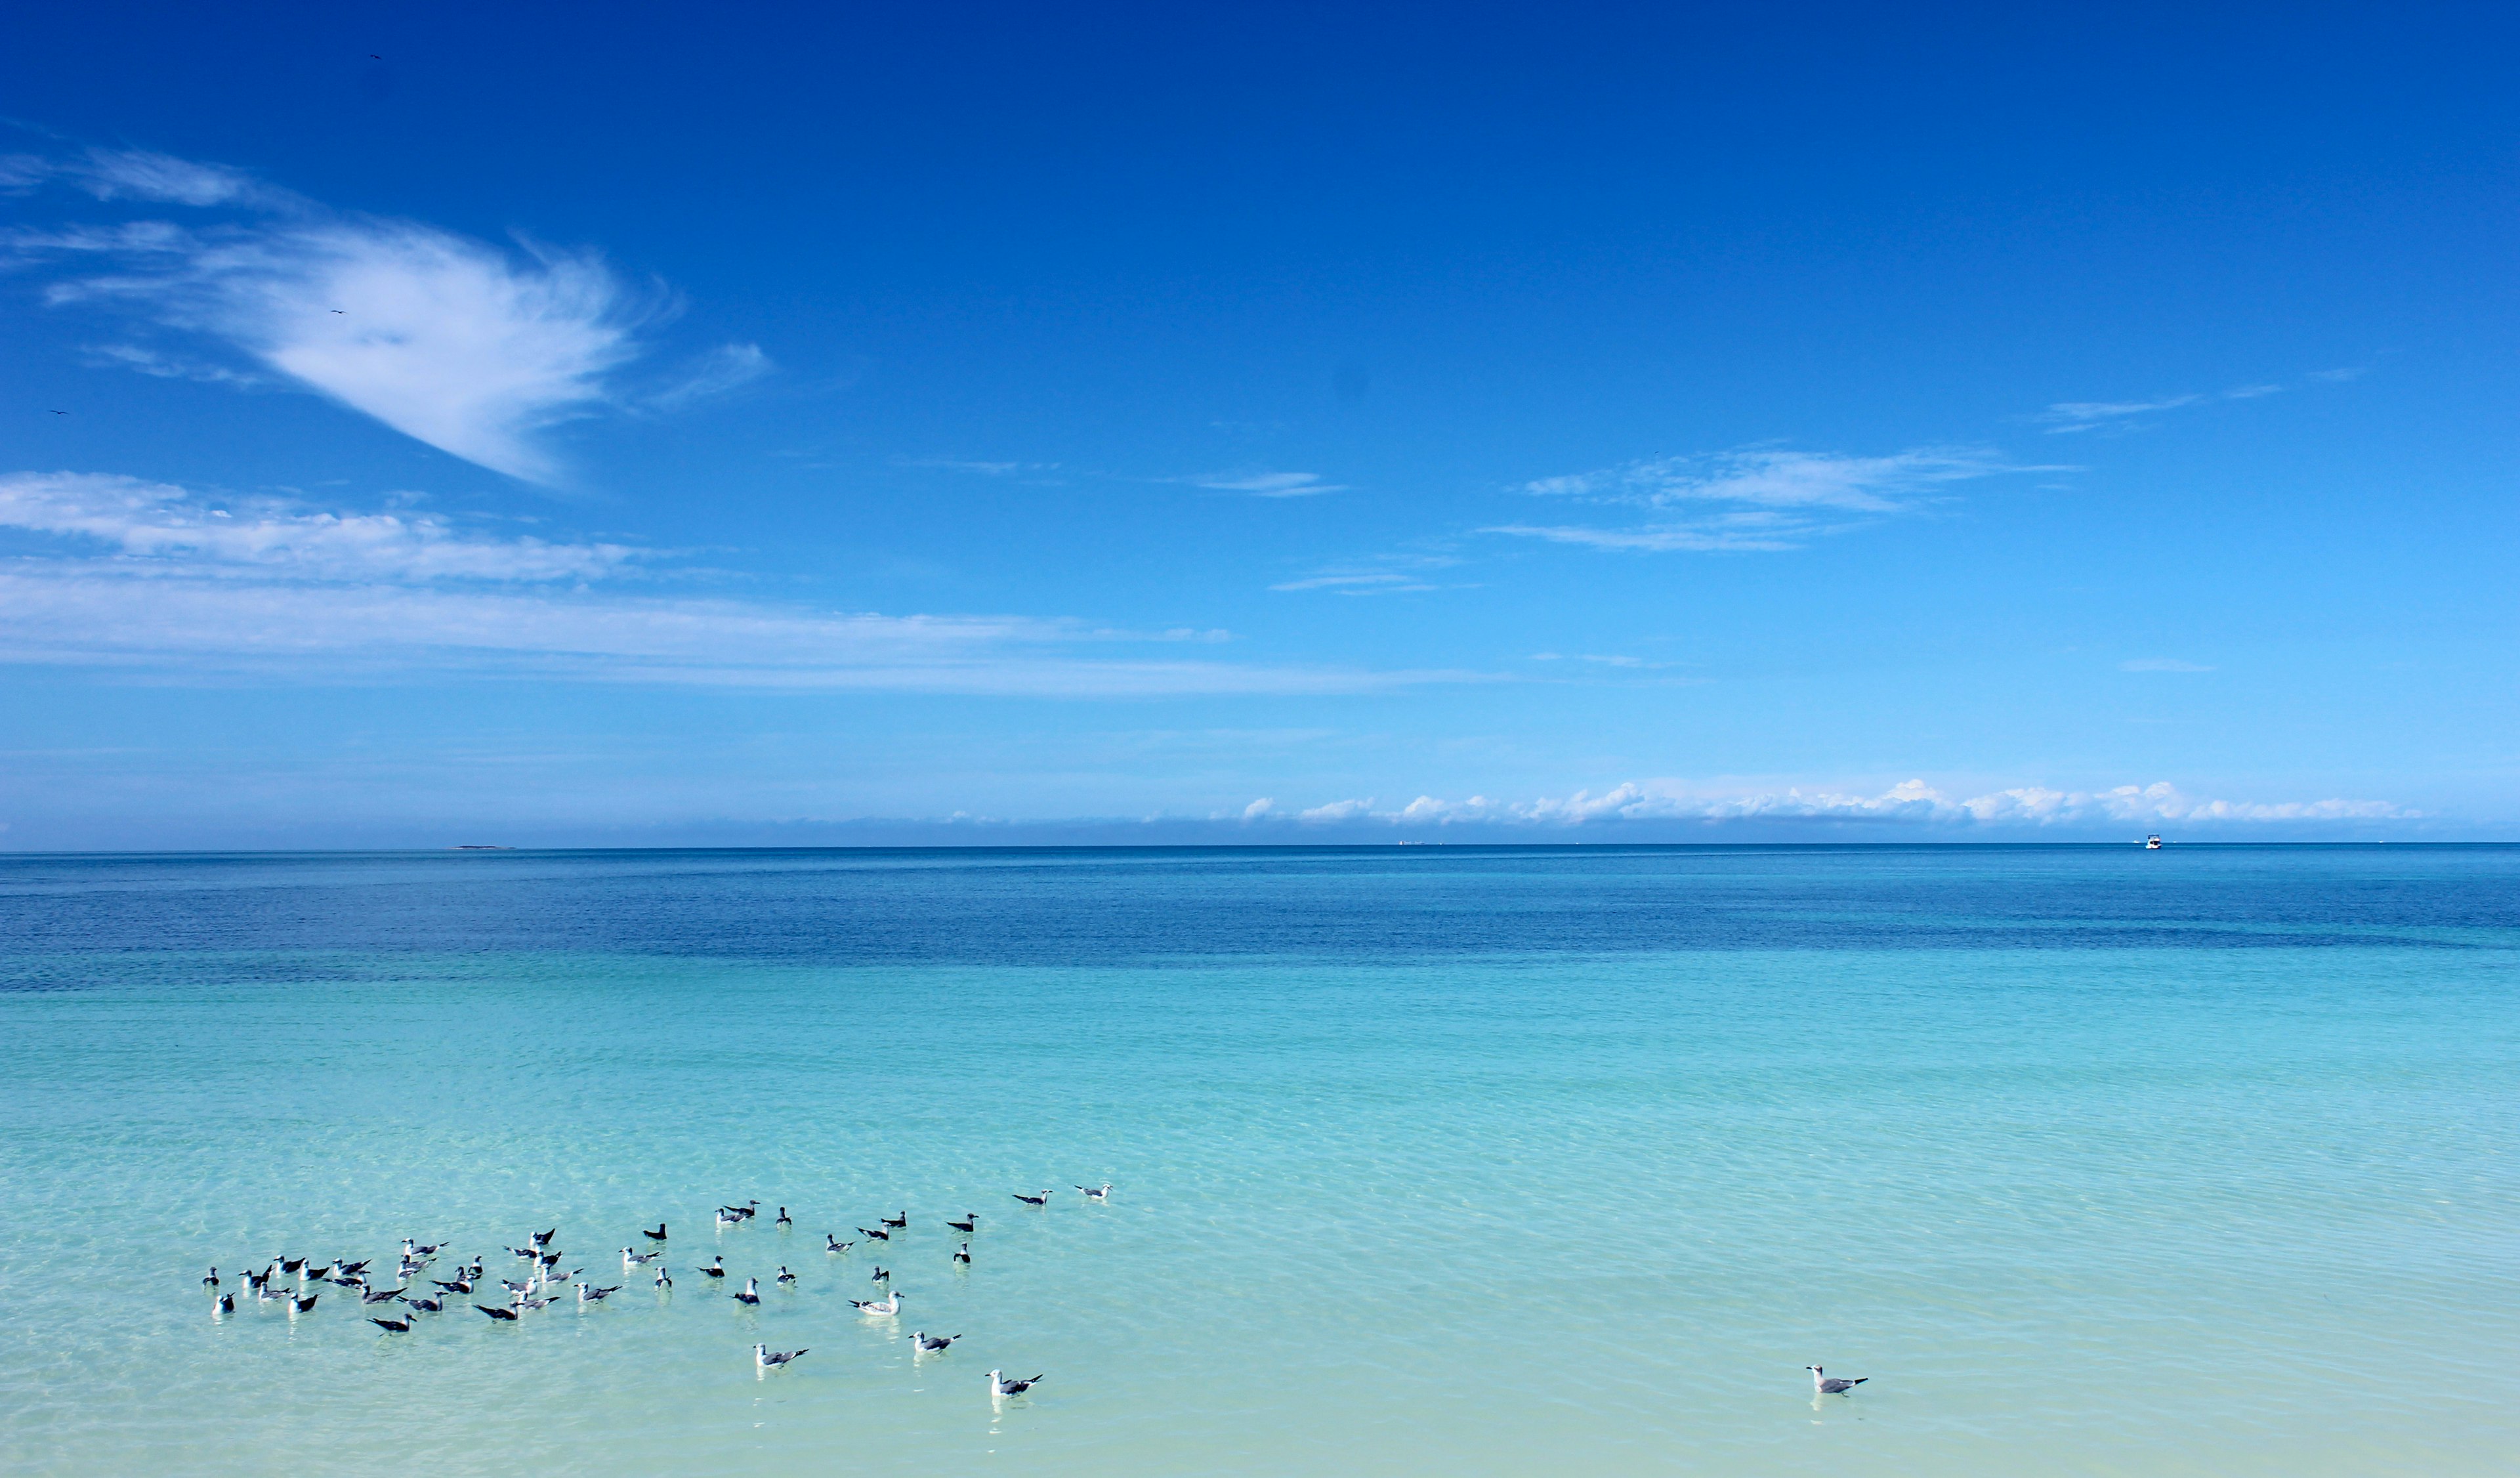 la spiaggia di varadero a cuba, una delle più belle del mondo